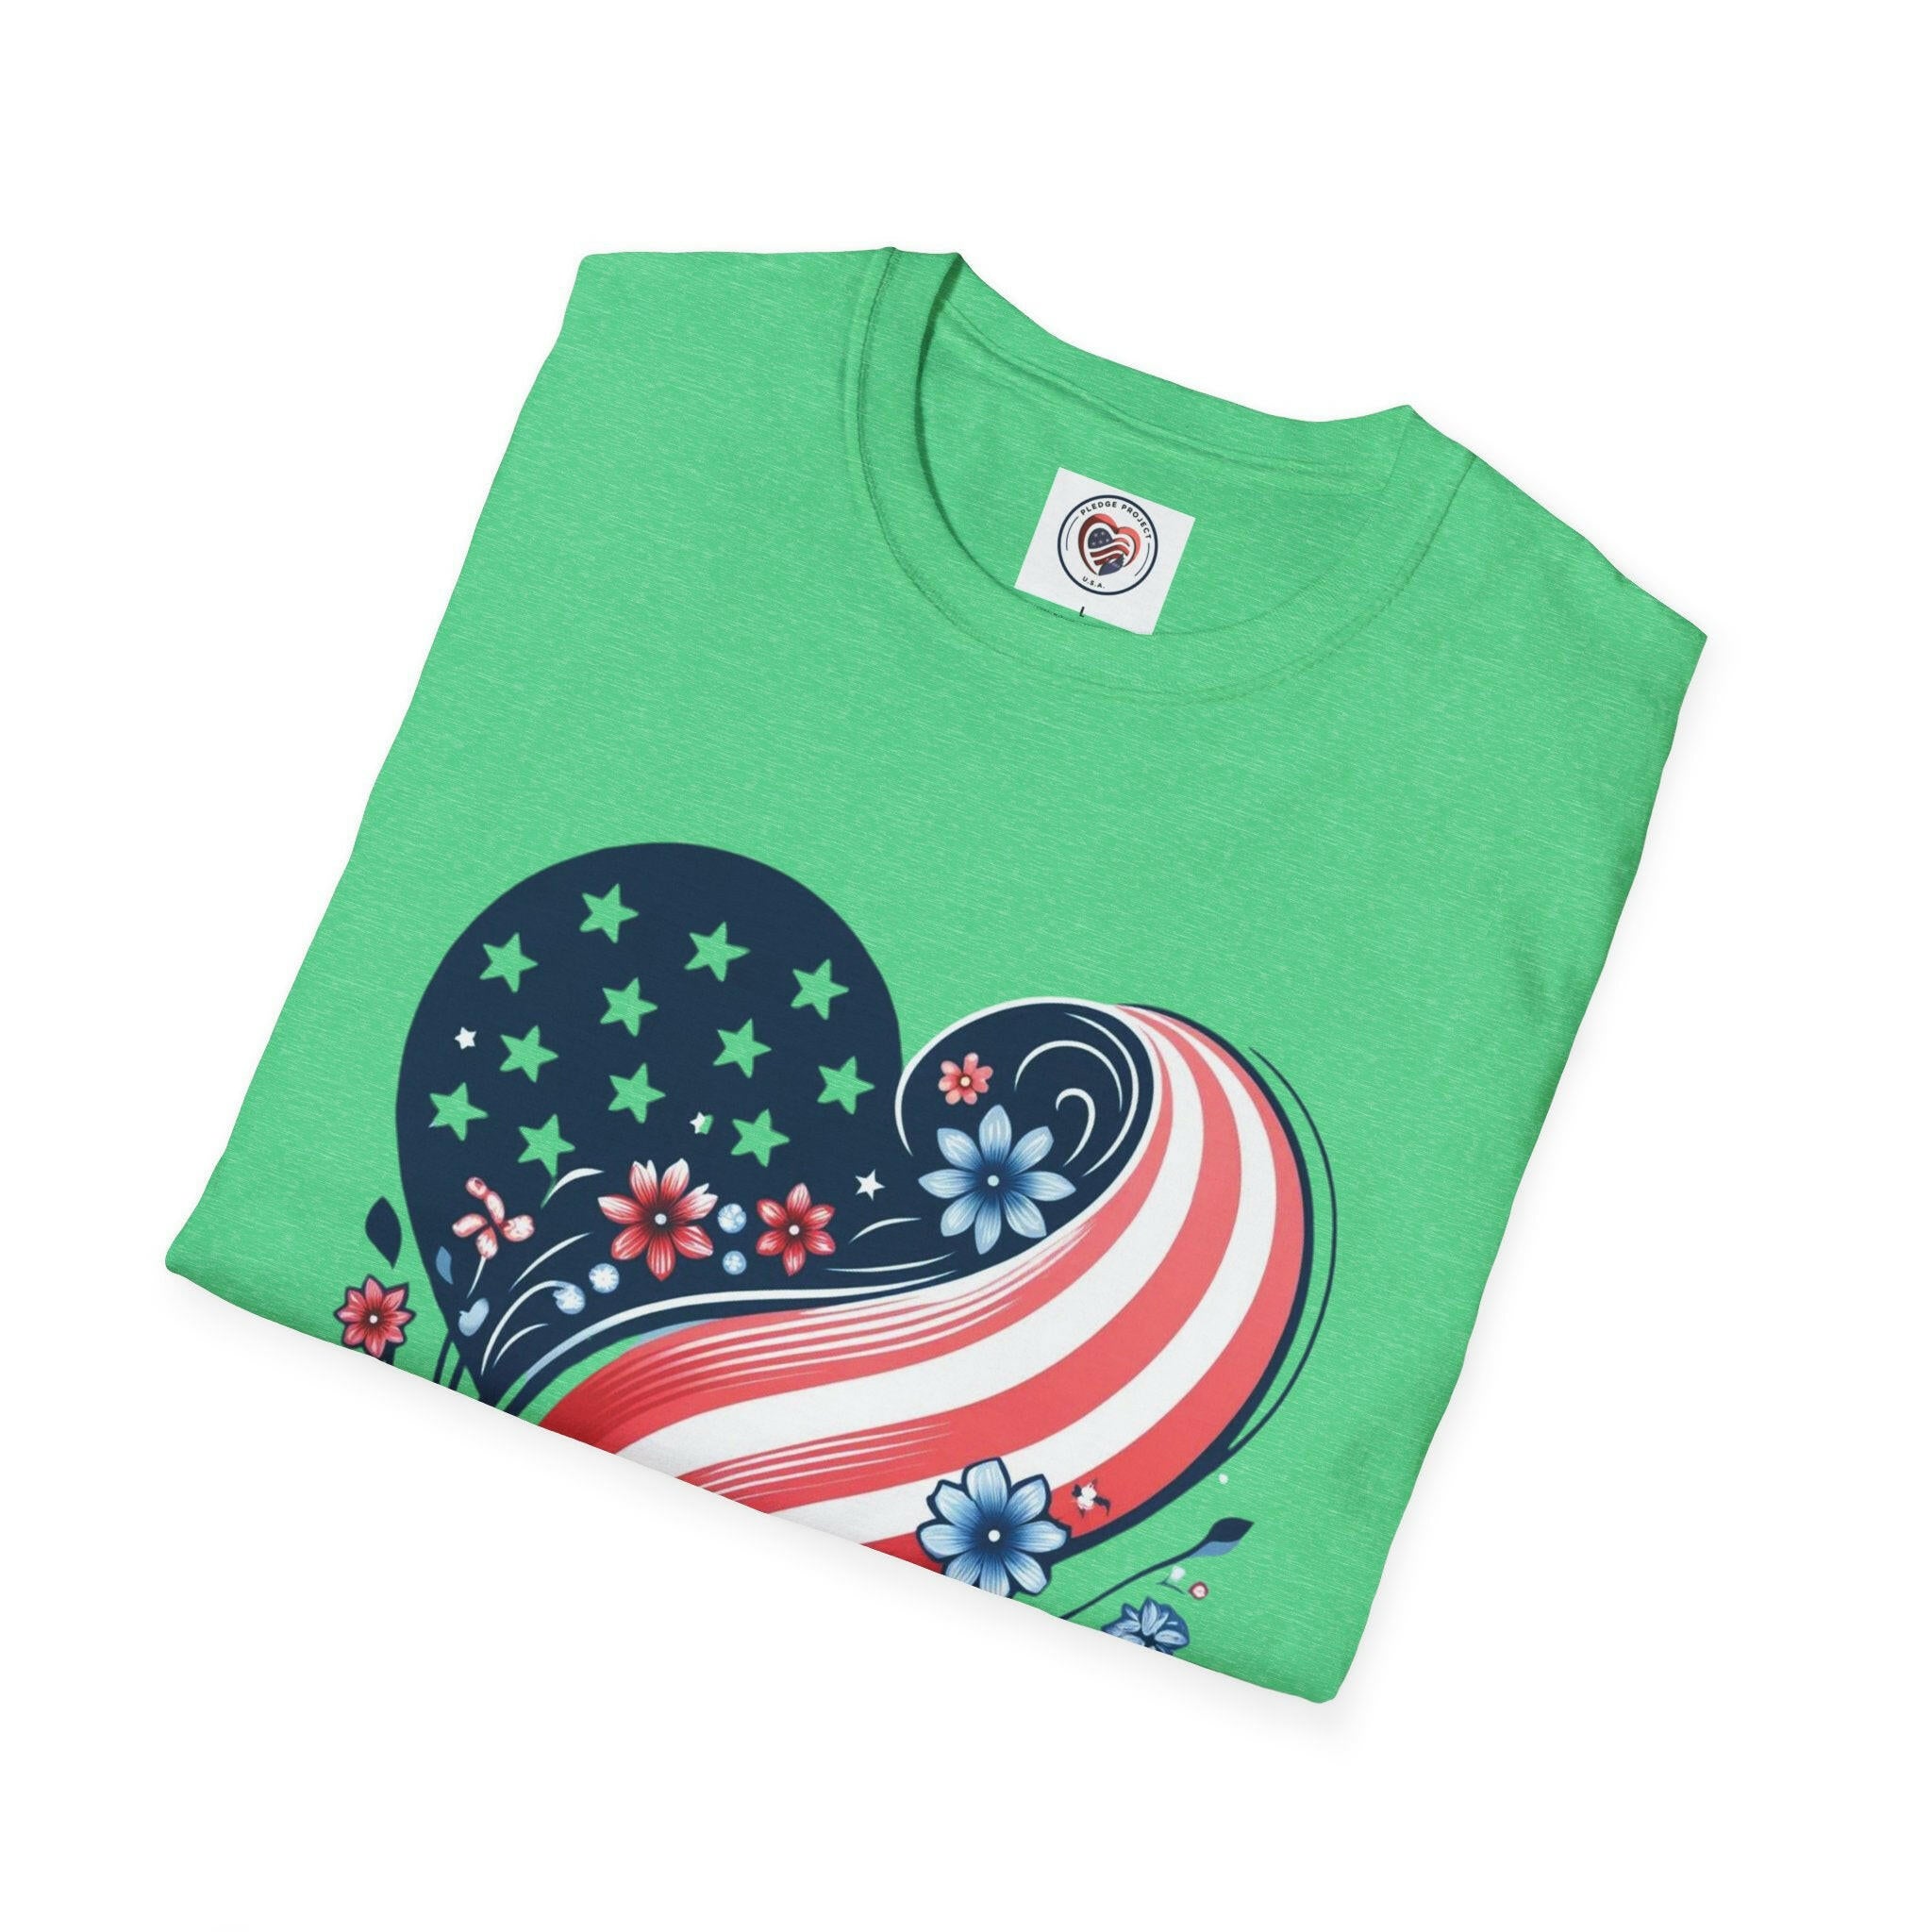 America the Beautiful - Softstyle T-Shirt.